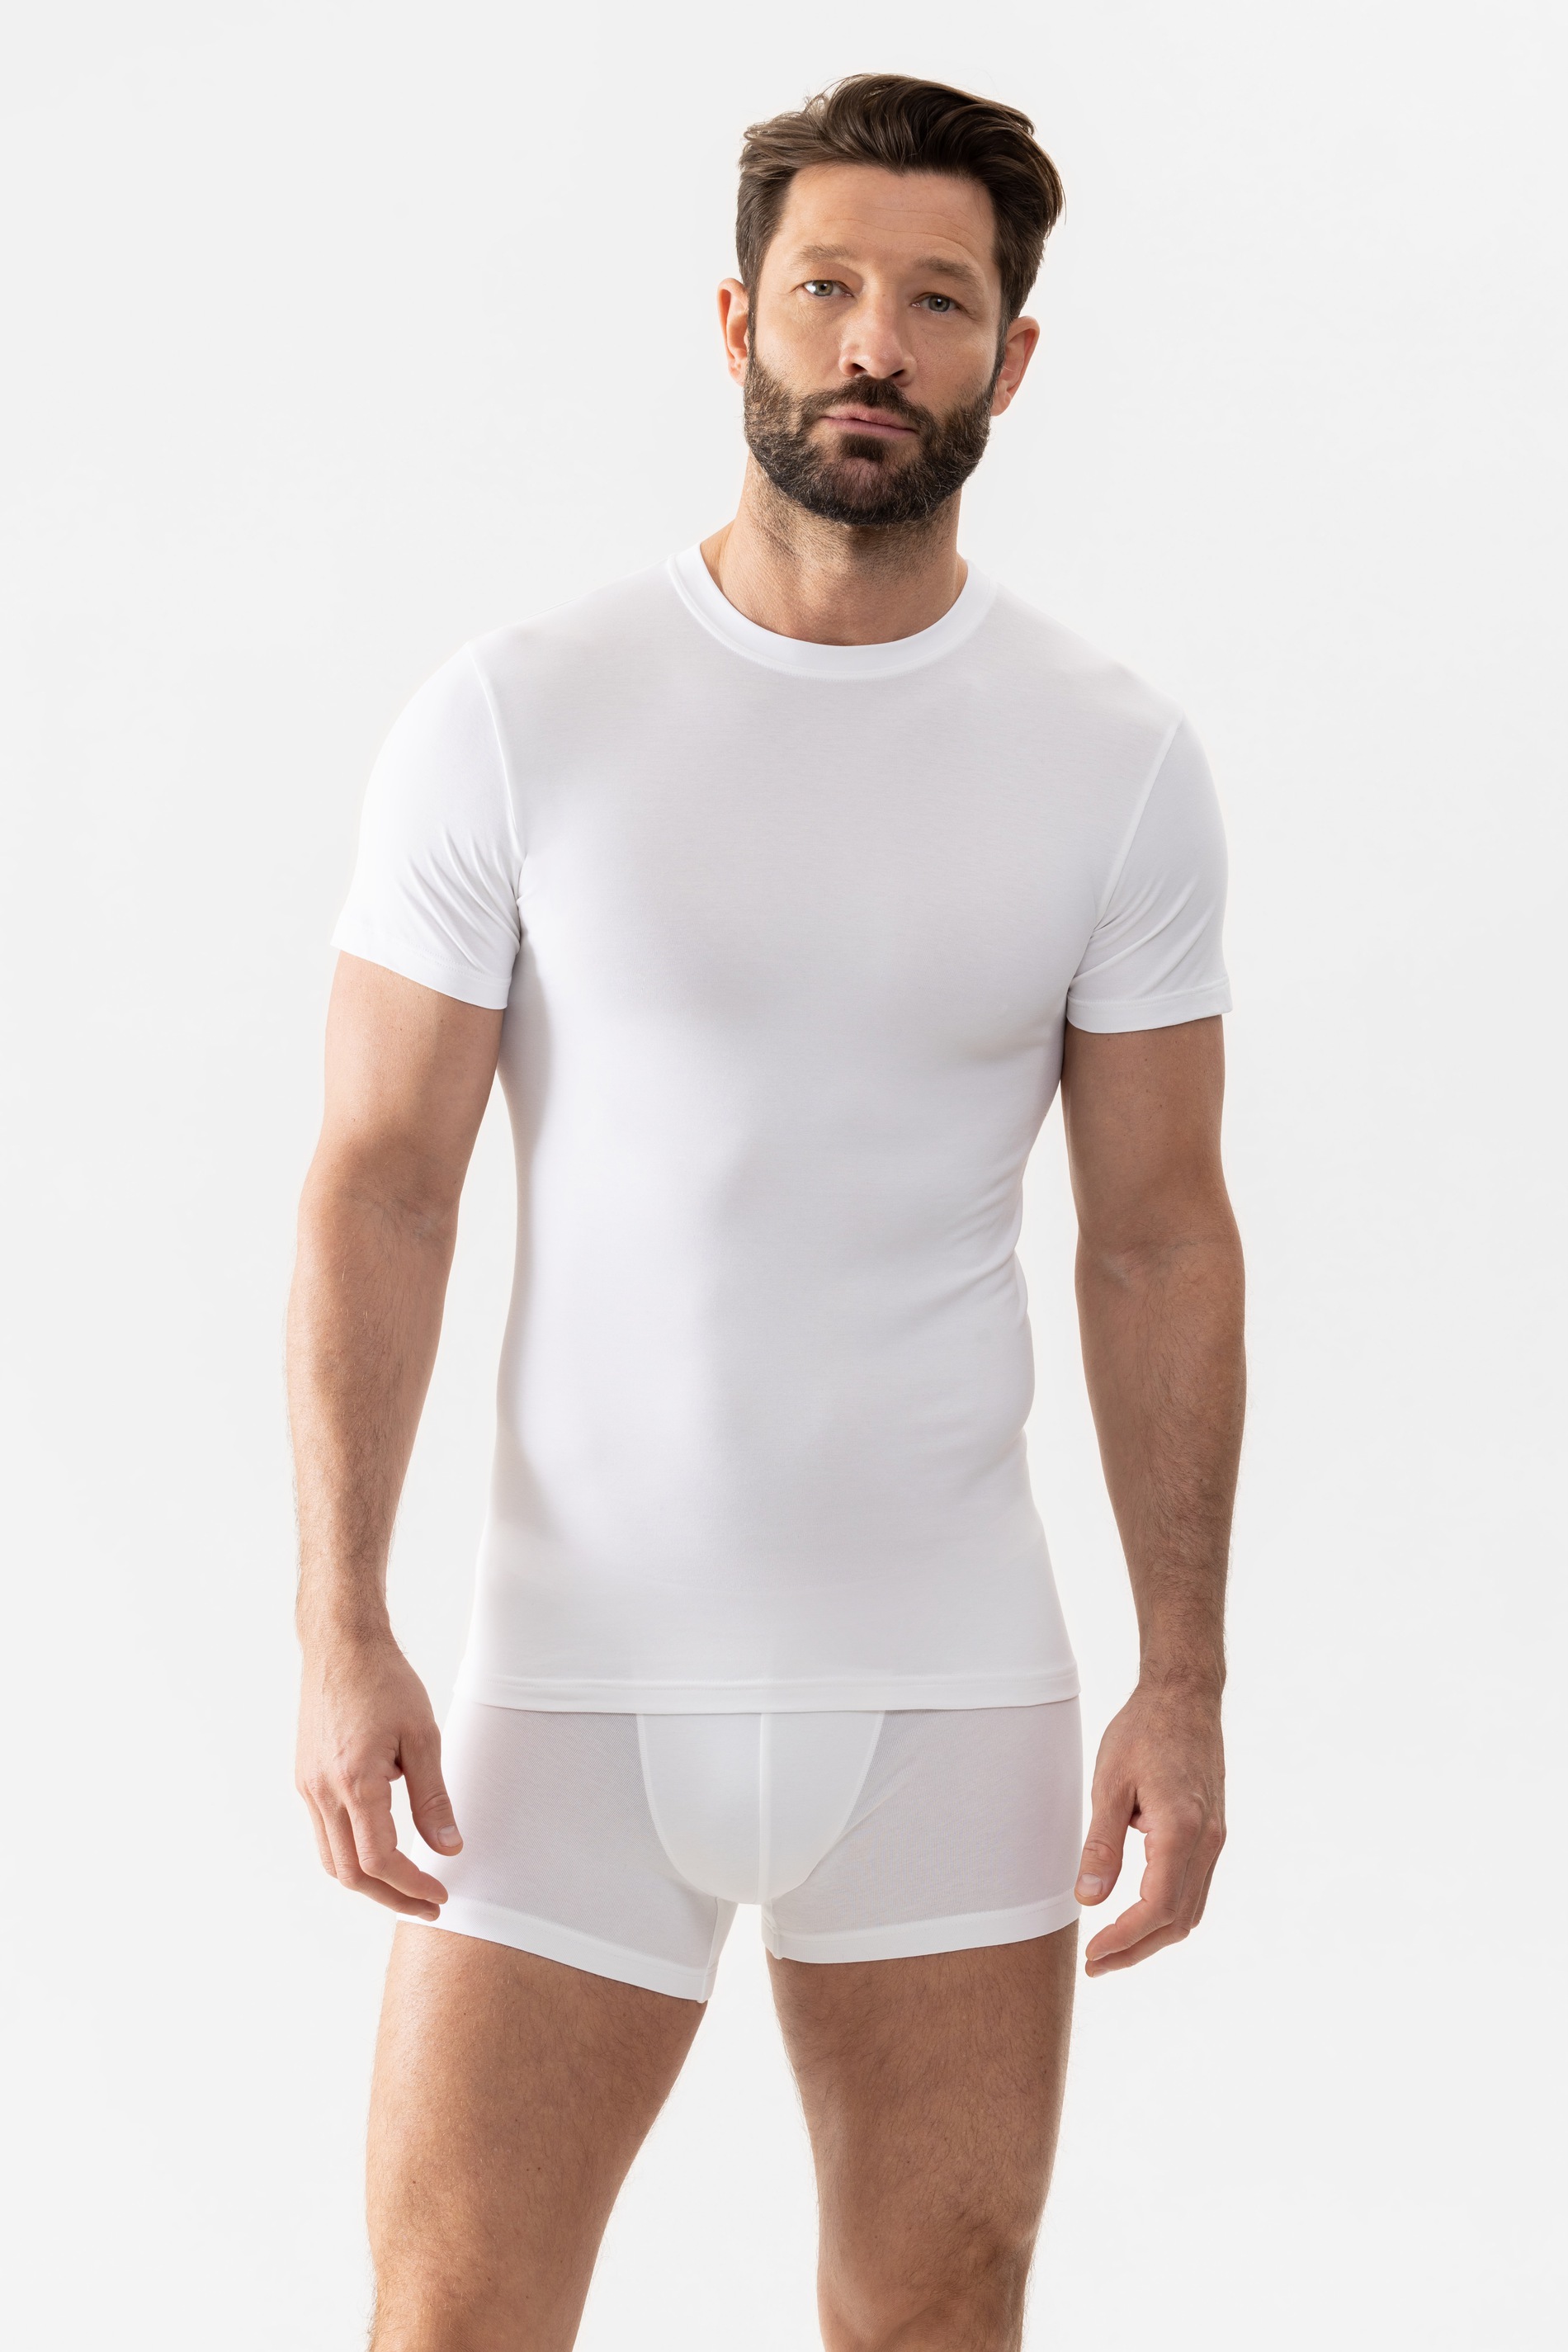 Olympia-shirt Wit Serie Software Vooraanzicht | mey®